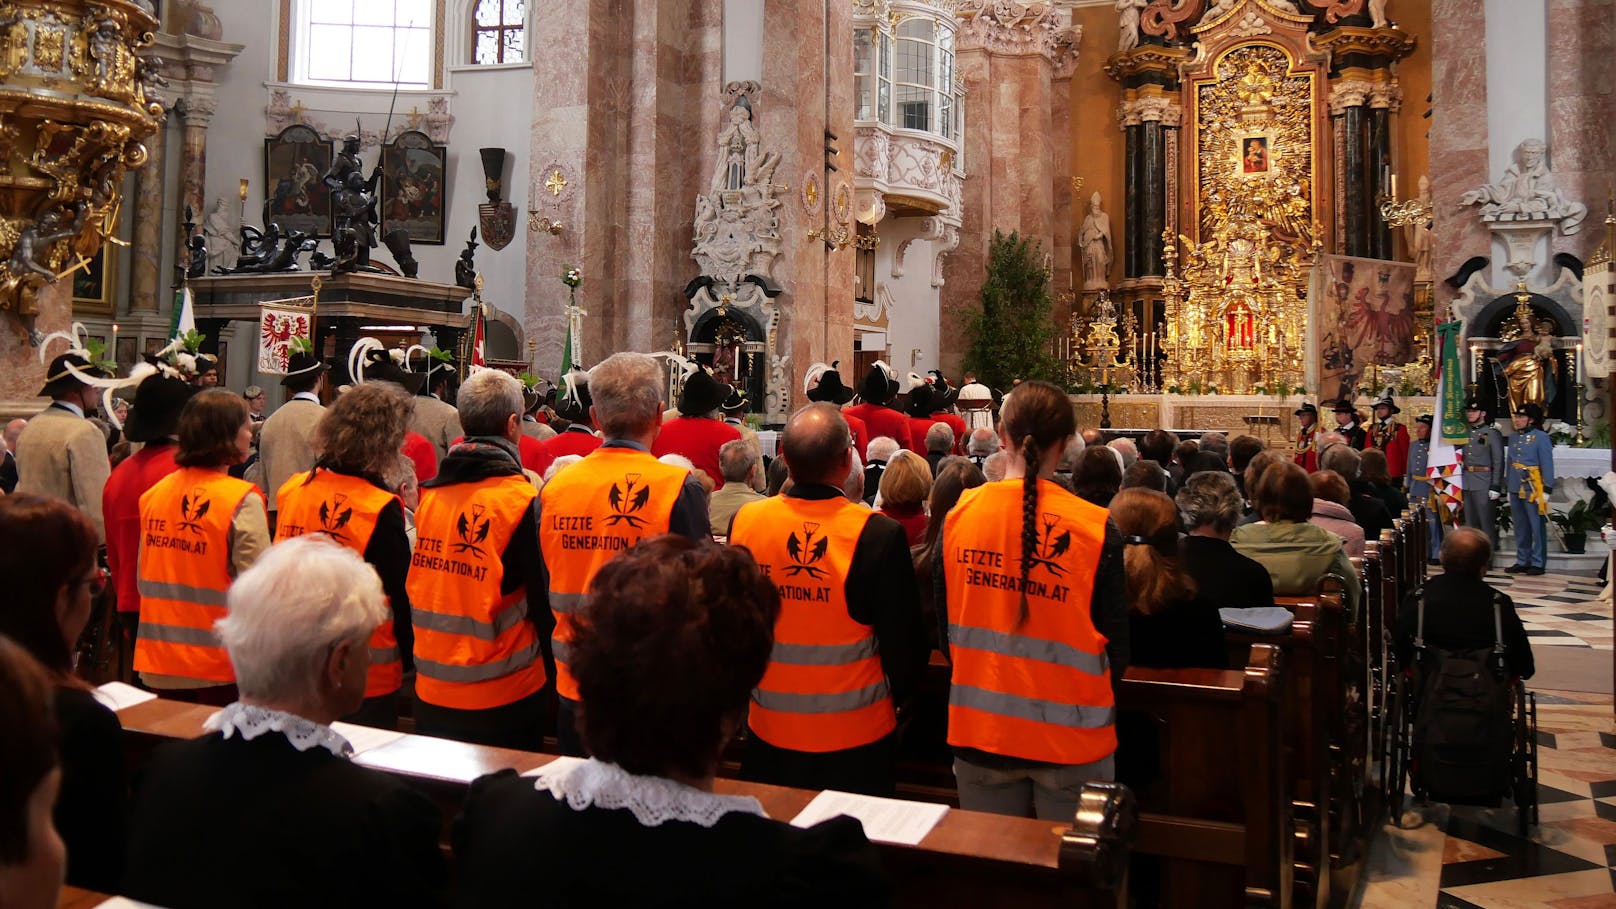 "Heute haben wir in Innsbruck beim Fronleichnamsgottesdienst mitgefeiert", schreiben die Aktivistengruppe auf X.